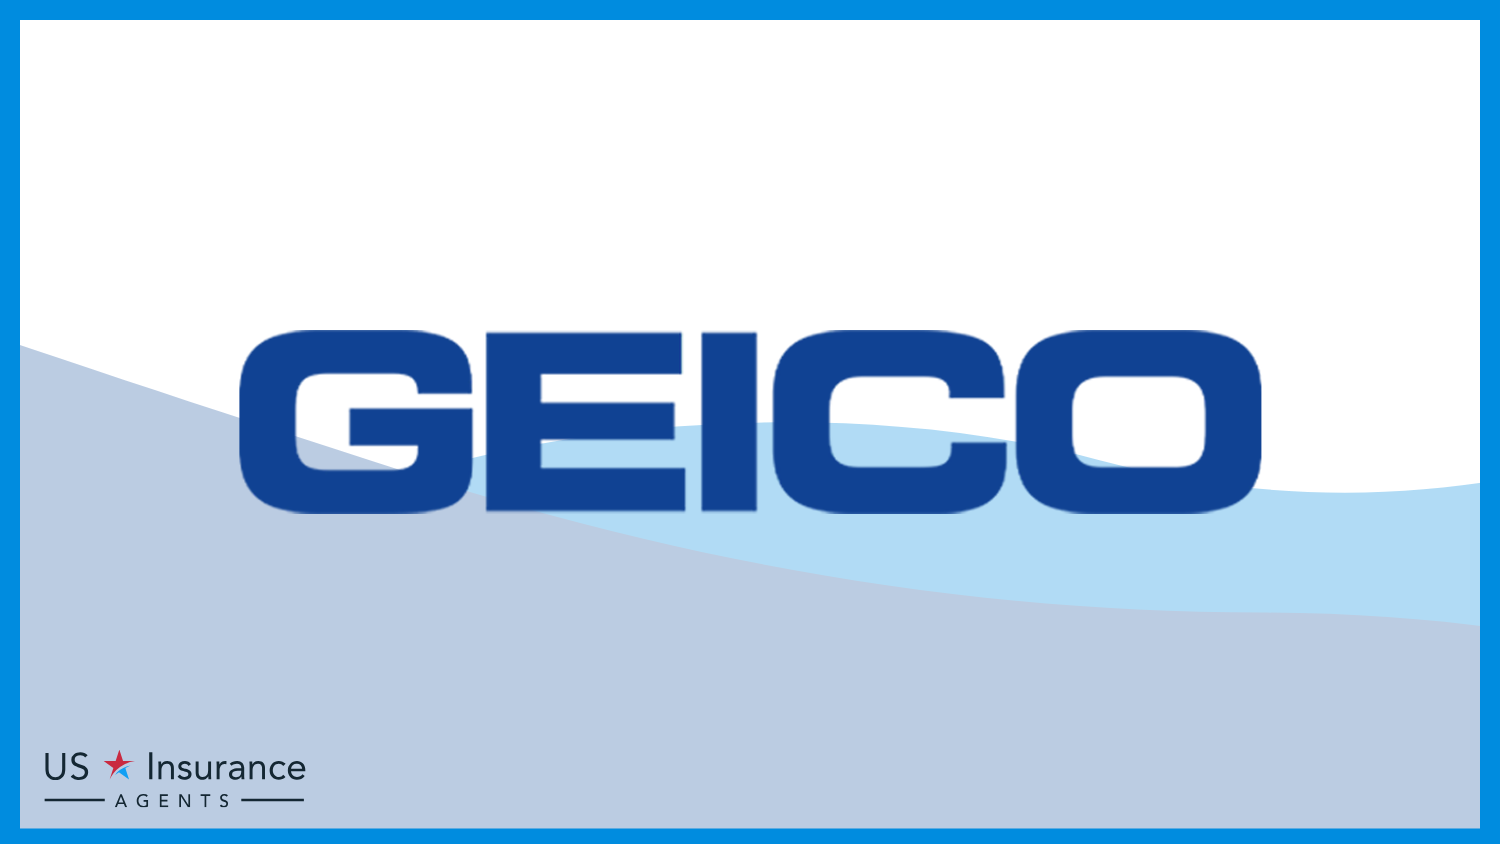 Geico: Best Life Insurance for Veterans